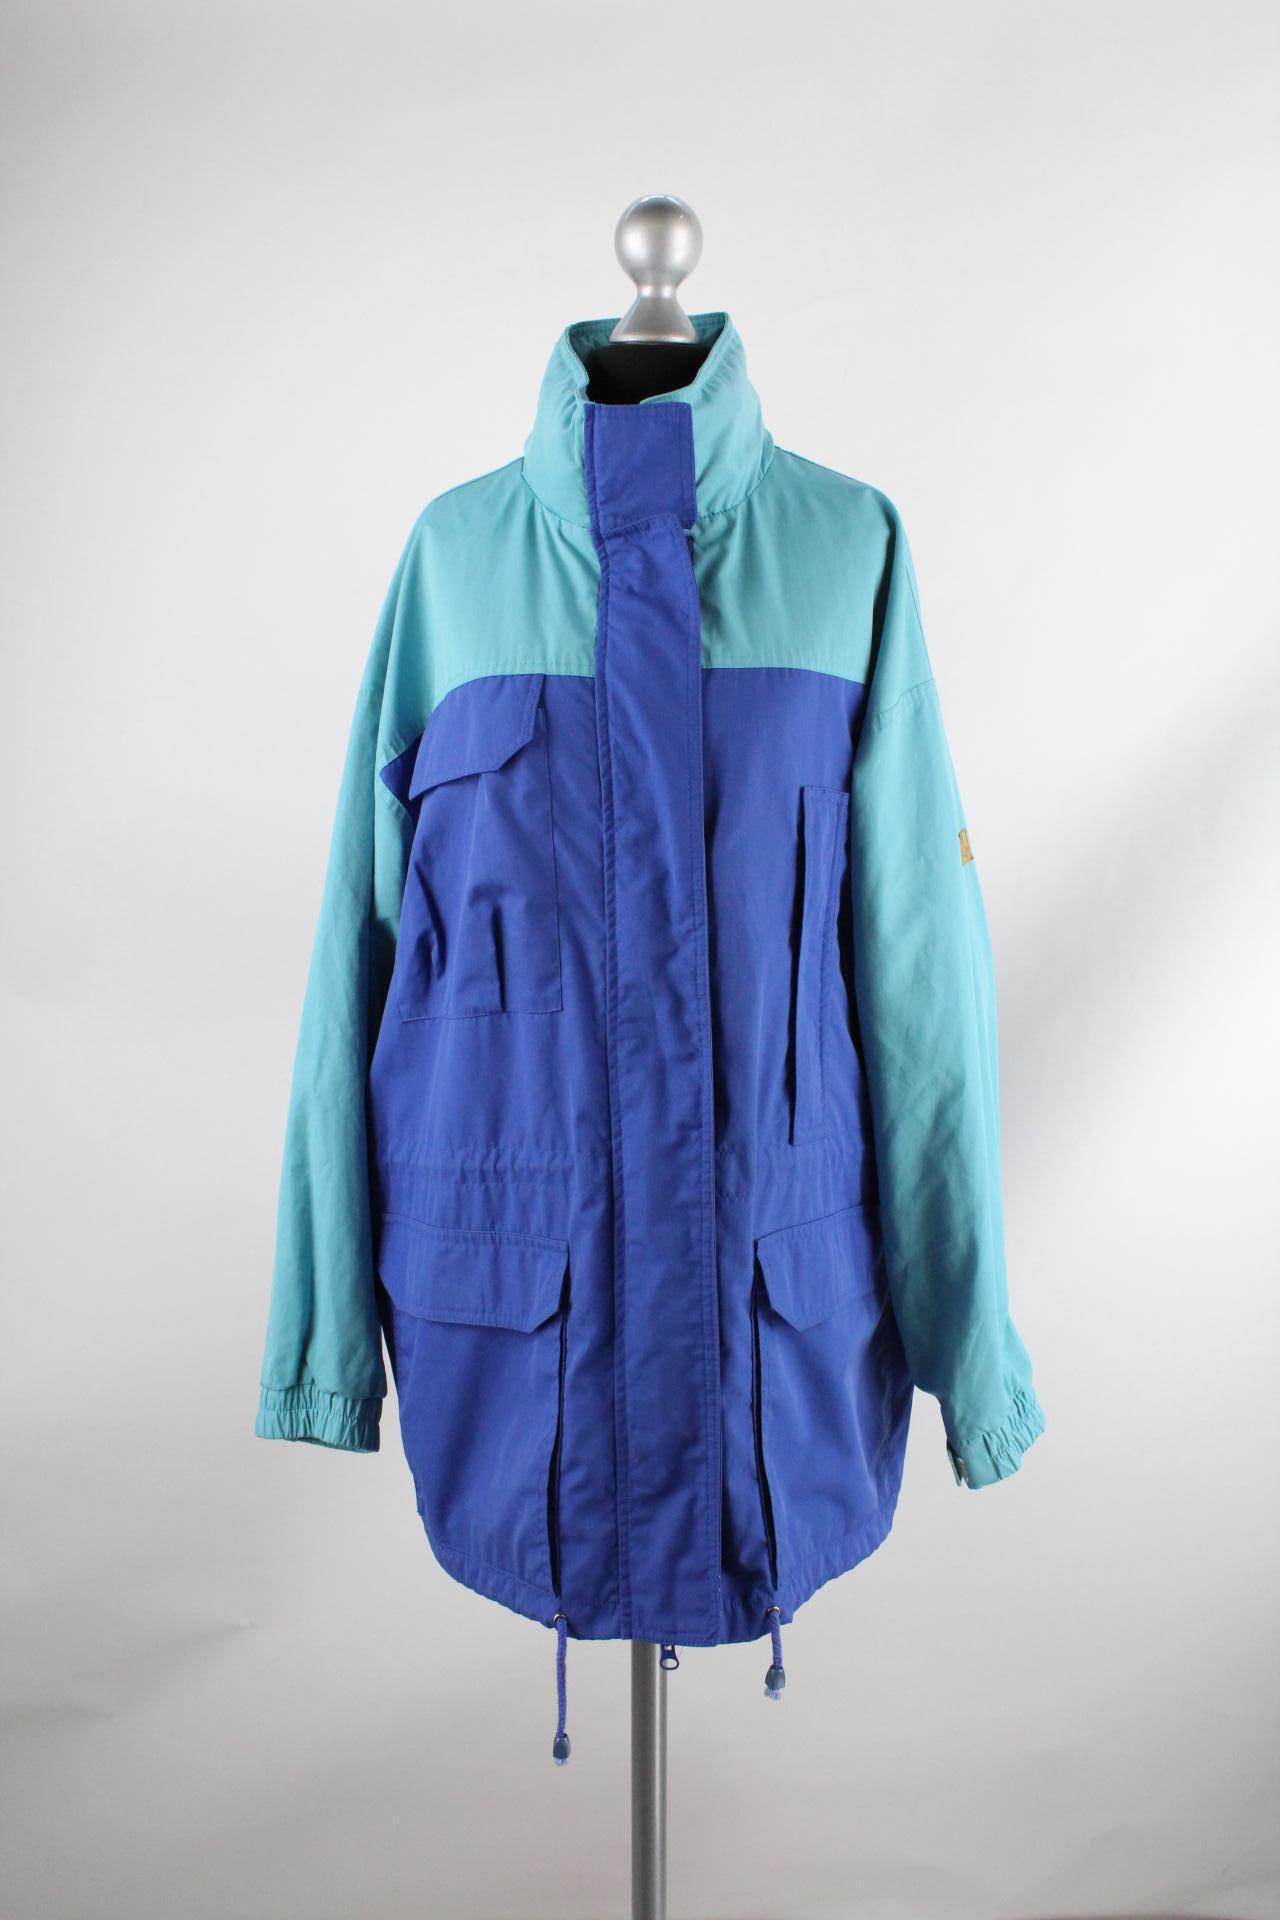 Maul Damen-Jacke blautöne Größe 44